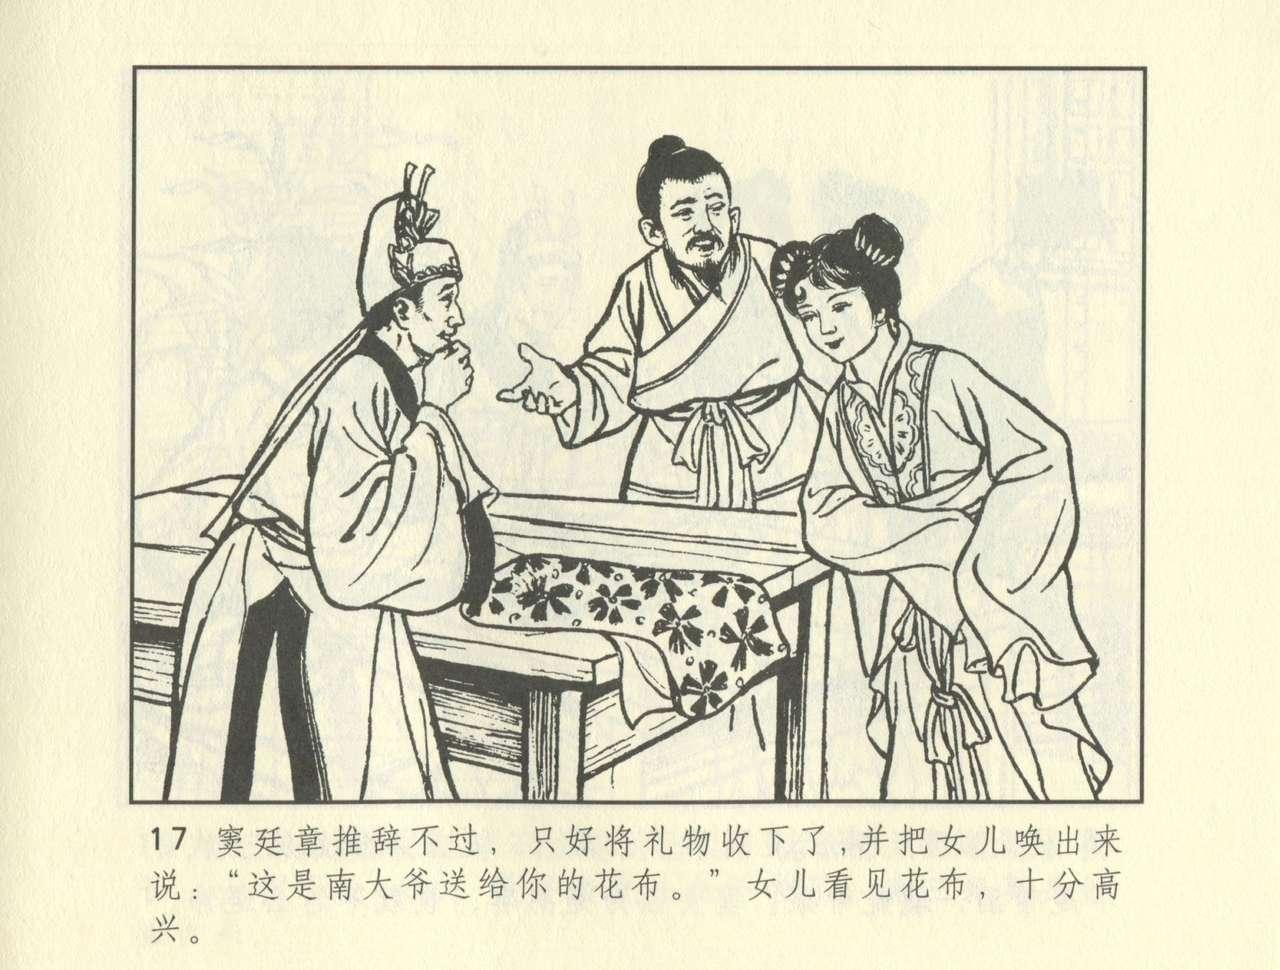 聊斋志异 张玮等绘 天津人民美术出版社 卷二十一 ~ 三十 226